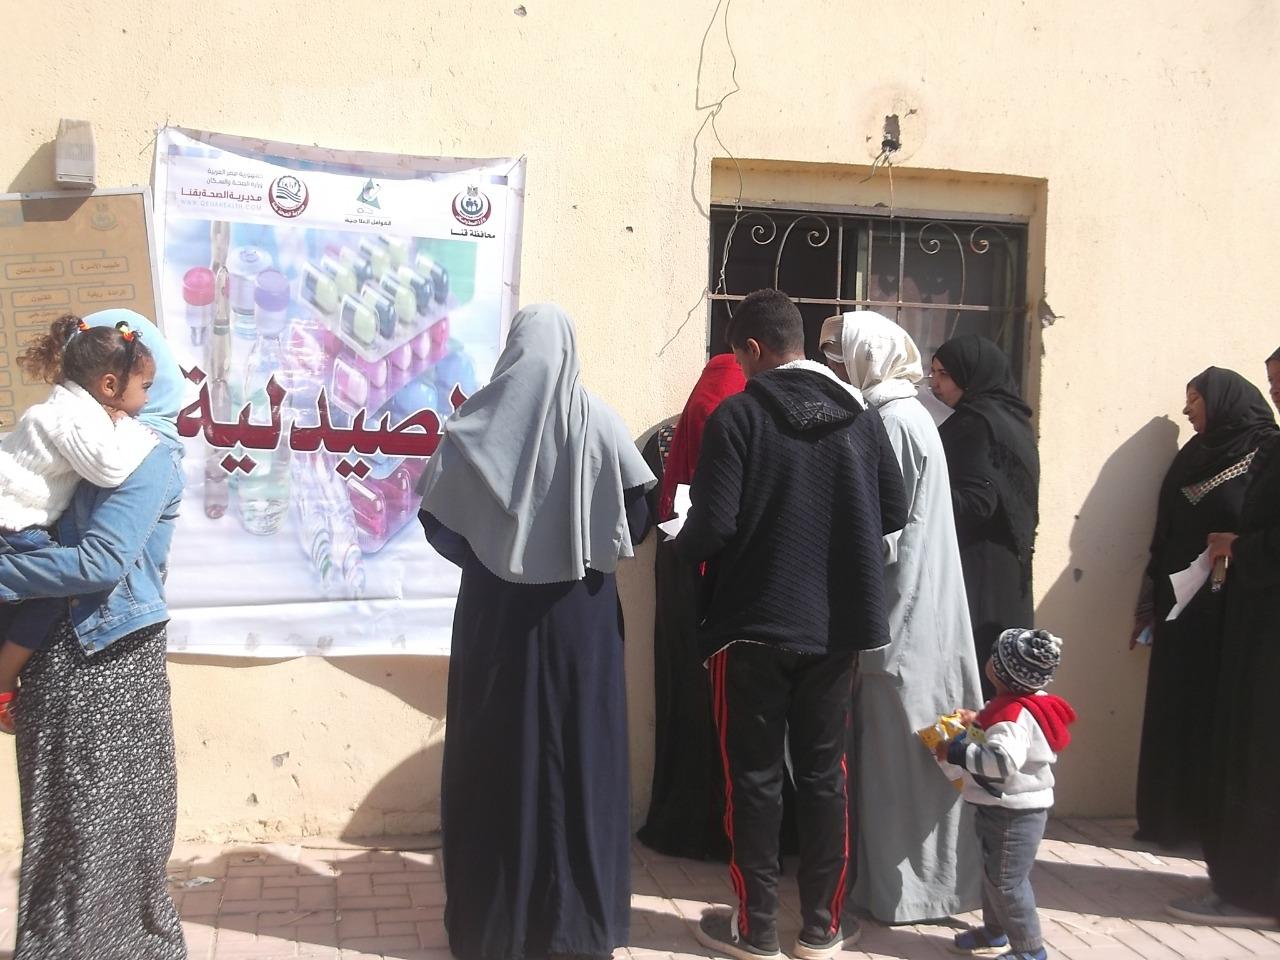   الكشف على 1680 حالة خلال القافلة الطبية بقرية أبوعمورى بمدينة نجع حمادى شمال قنا 